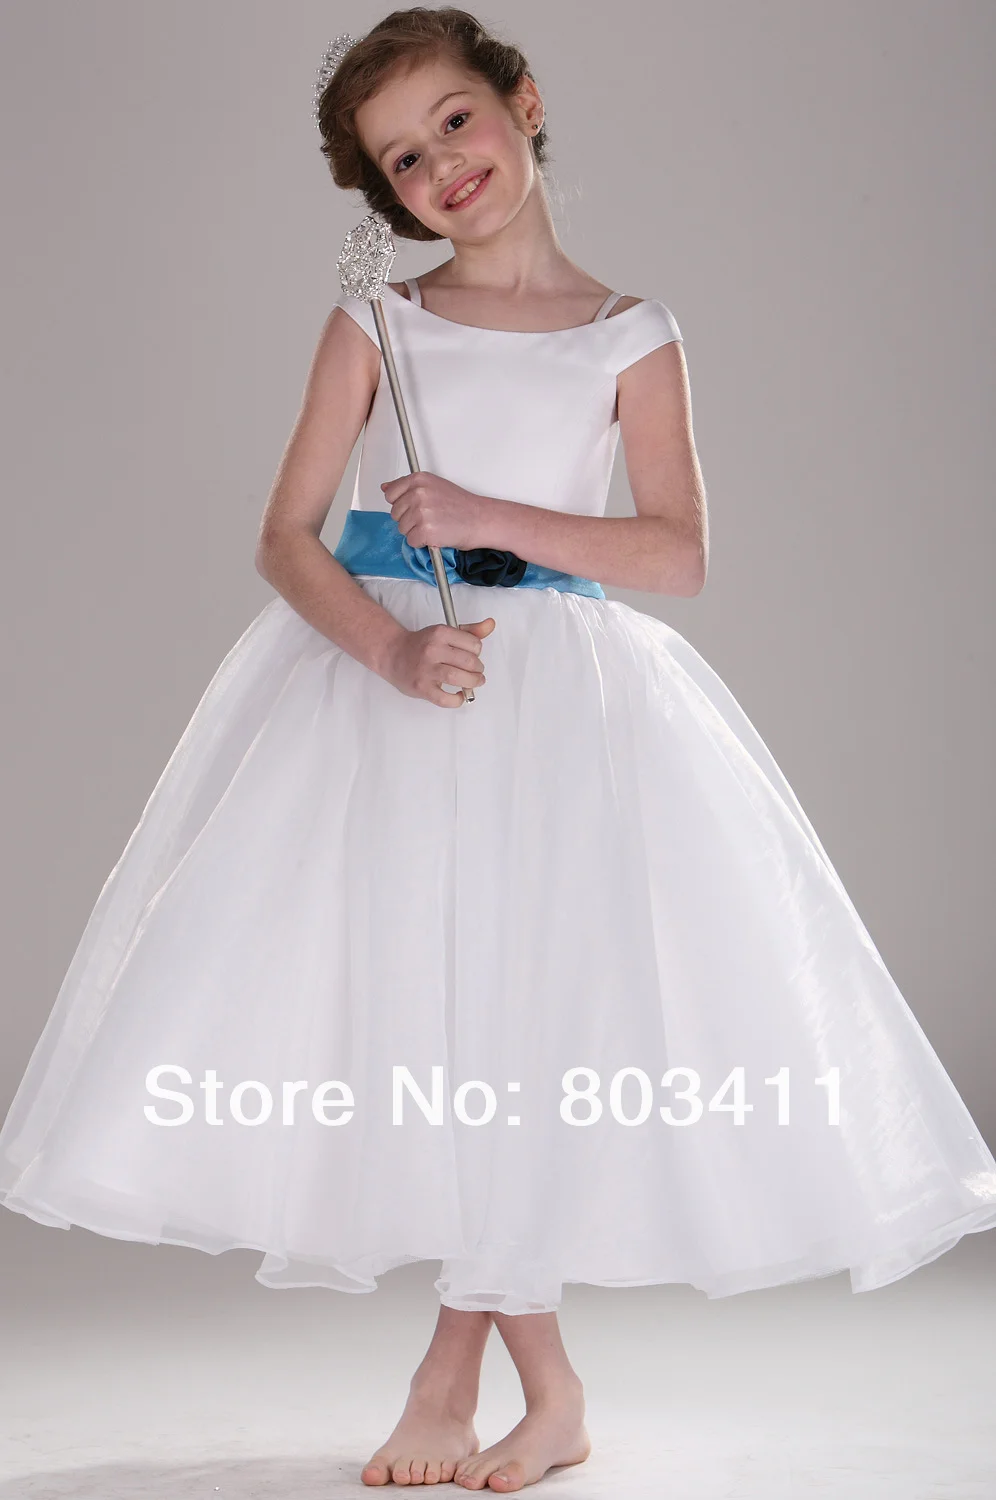 Бесплатная доставка Новое поступление милые Кепки рукавом Белый органзы с синим поясом платье с цветочным узором для девочек